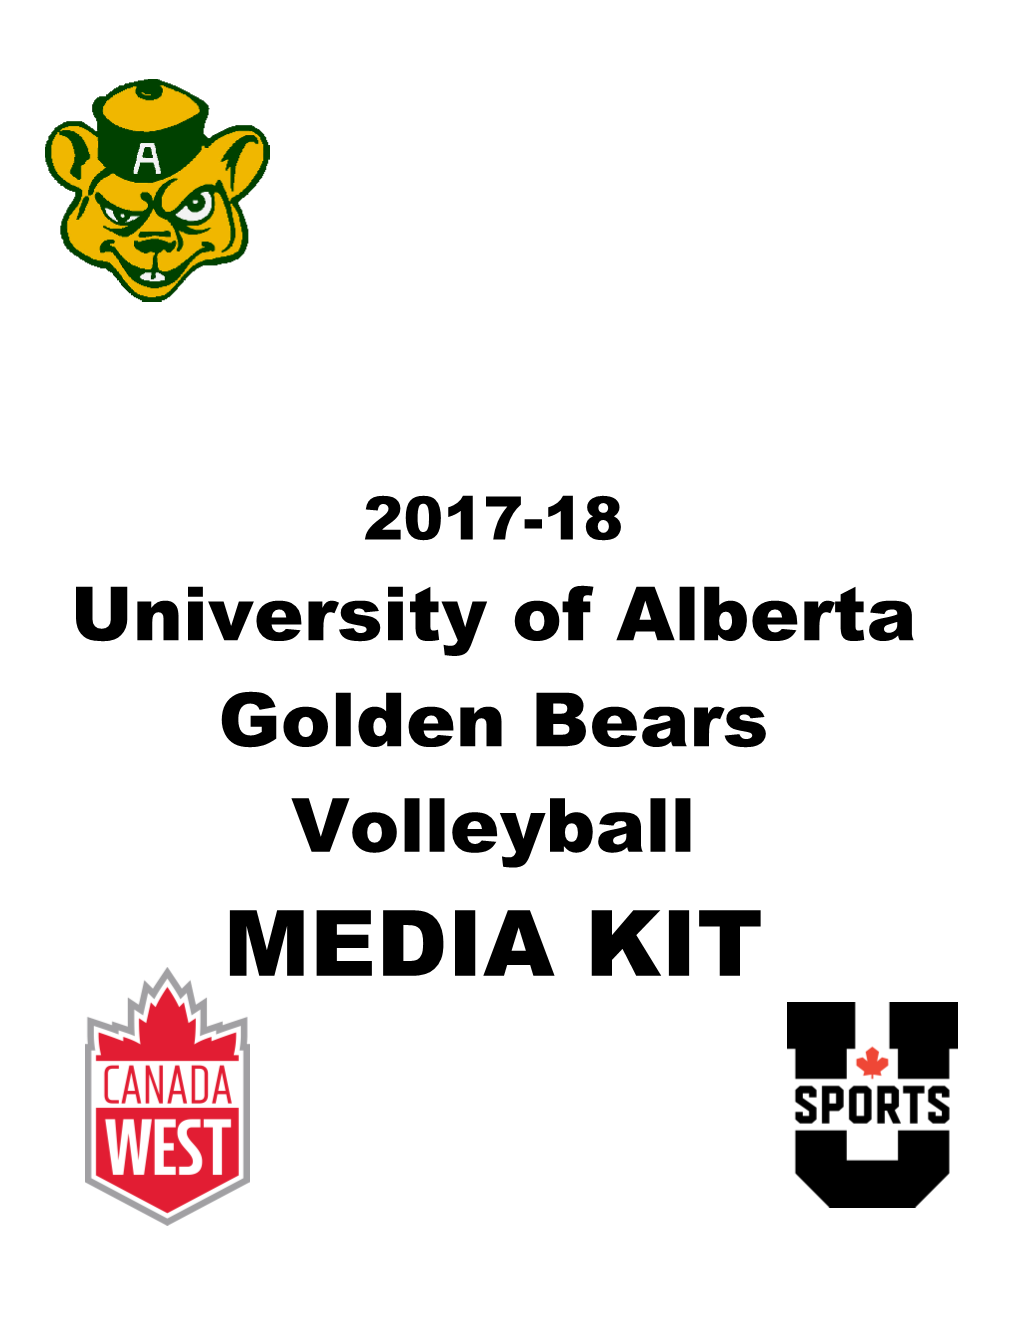 University of Alberta Golden Bears Volleyball MEDIA KIT